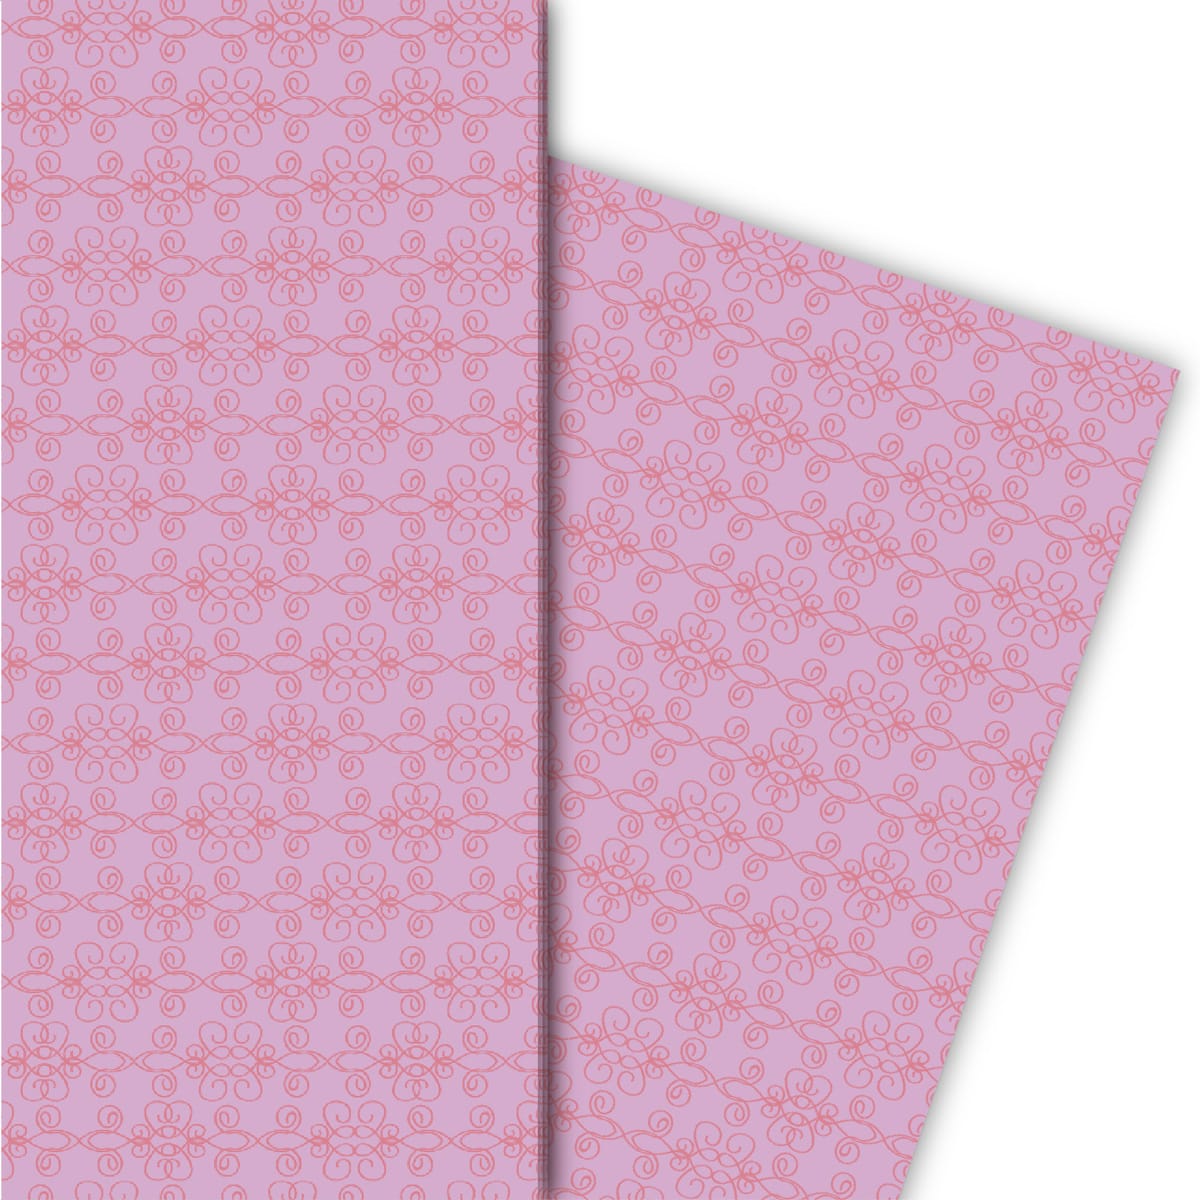 Kartenkaufrausch: Florales, grafisches Geschenkpapier für aus unserer florale Papeterie in rosa